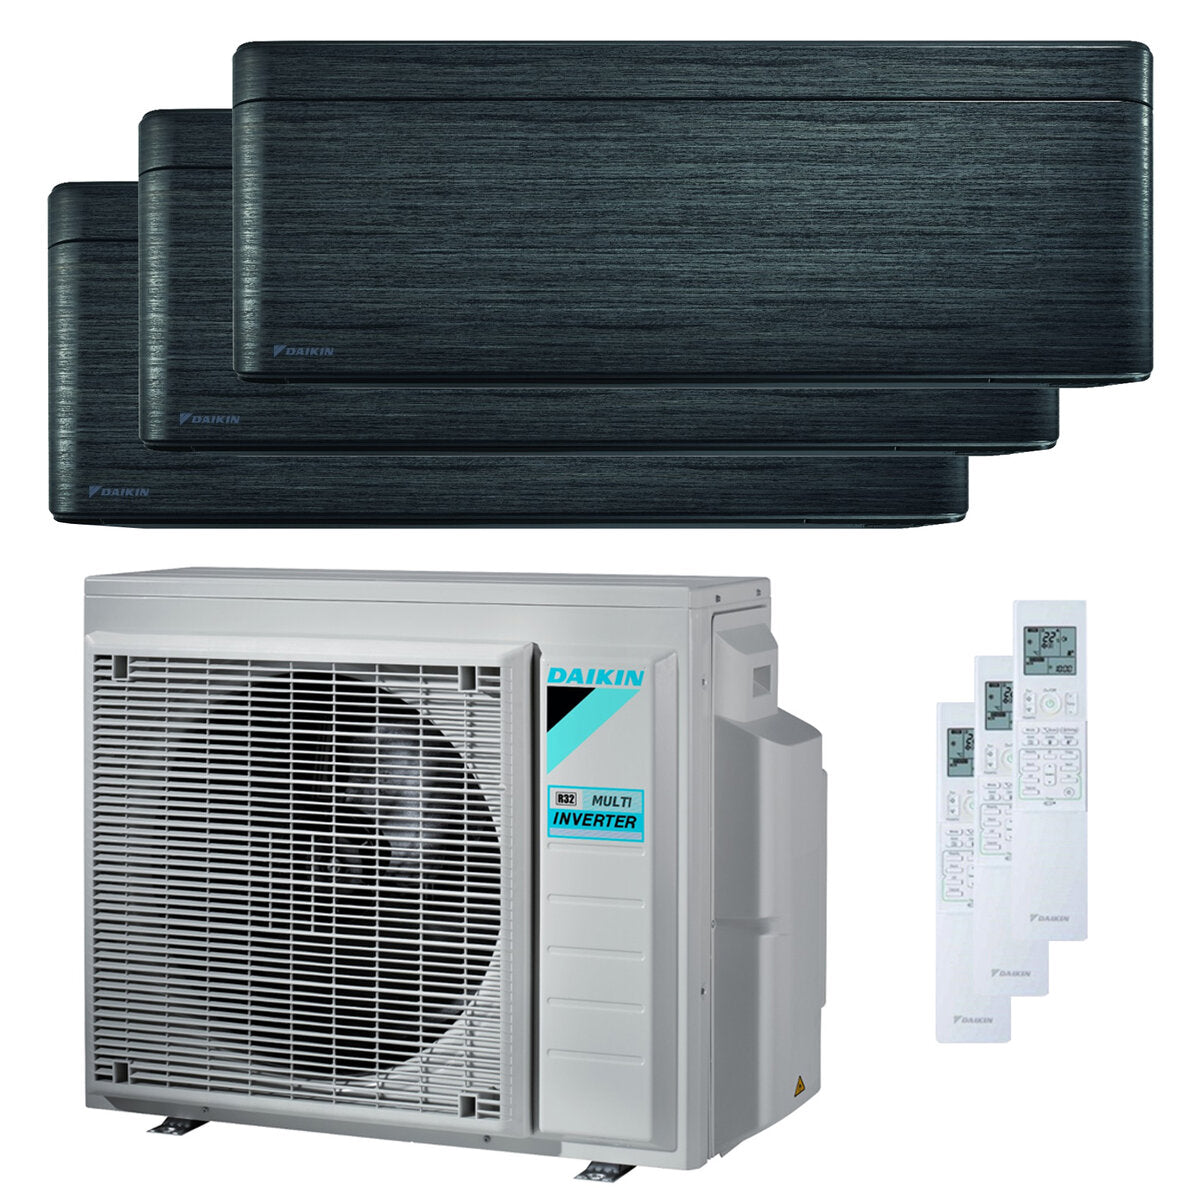 Daikin Stylish Trial Split Klimaanlage 5000 + 7000 + 12000 BTU Inverter A +++ WLAN Außengerät 5,2 kW